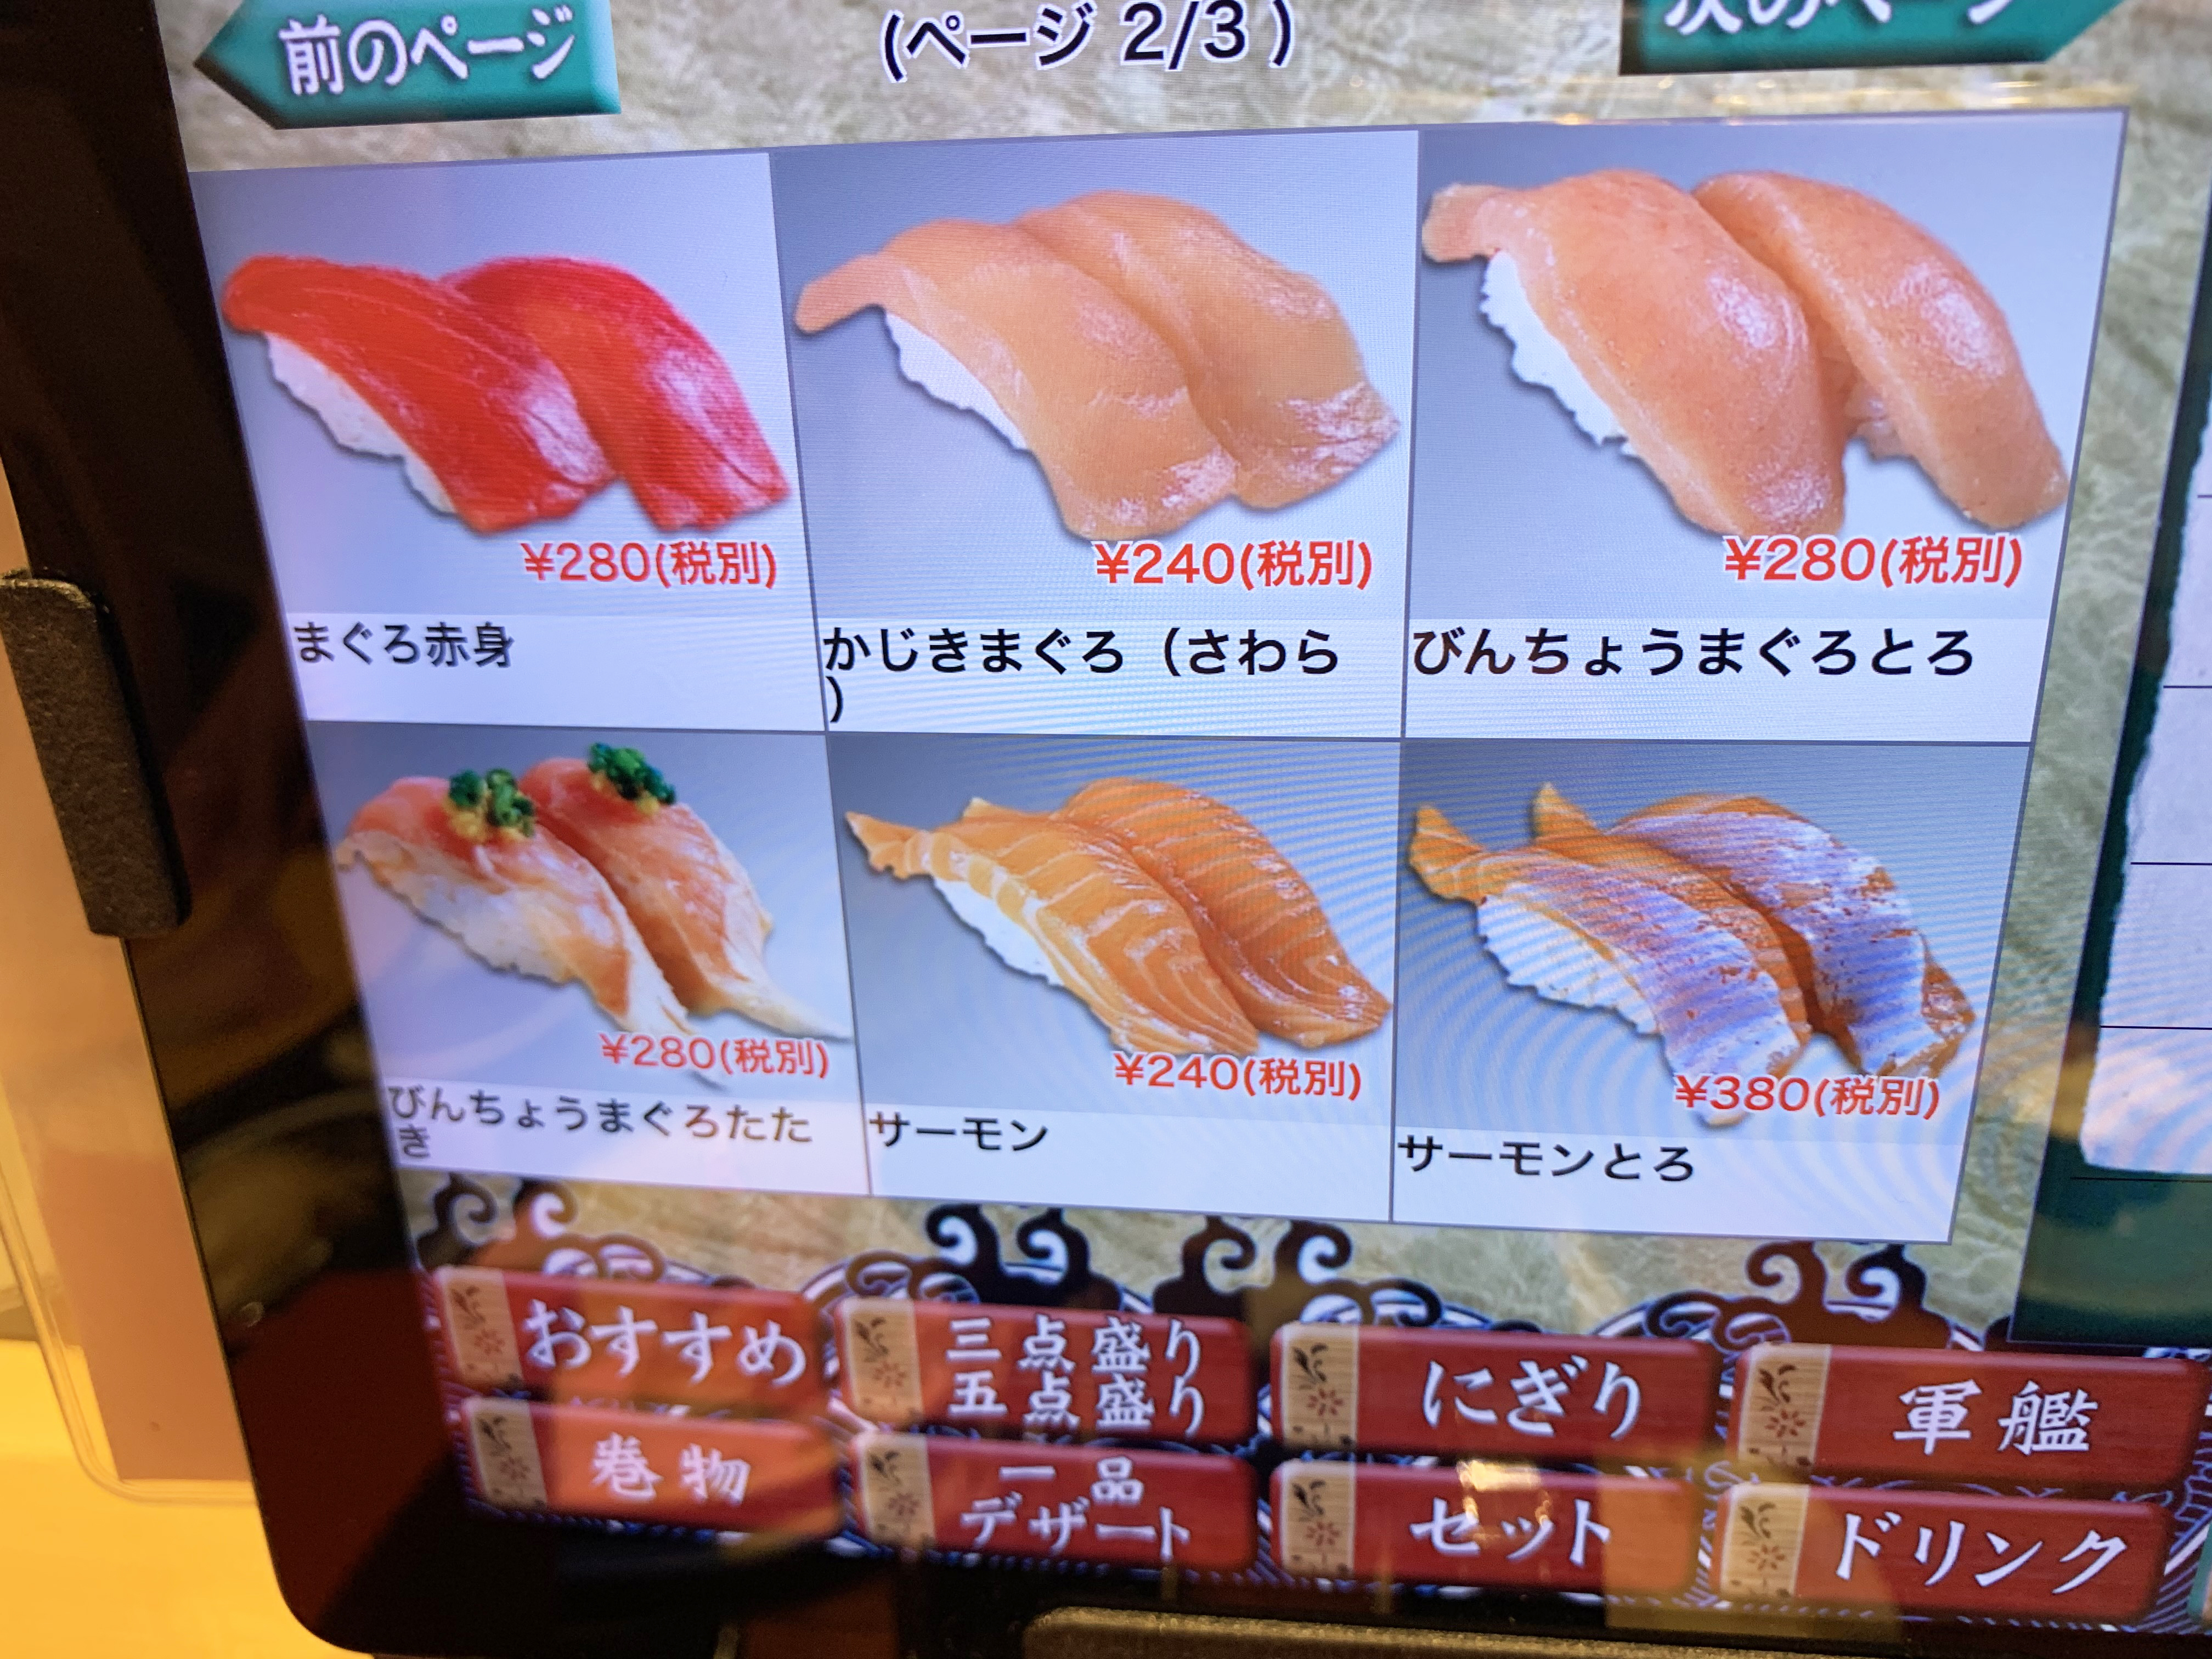 朗報 海鮮王国 石川県で行列のできる回転寿司 もりもり寿し が激ウマだった ちなみに東京にもあるぞー ロケットニュース24